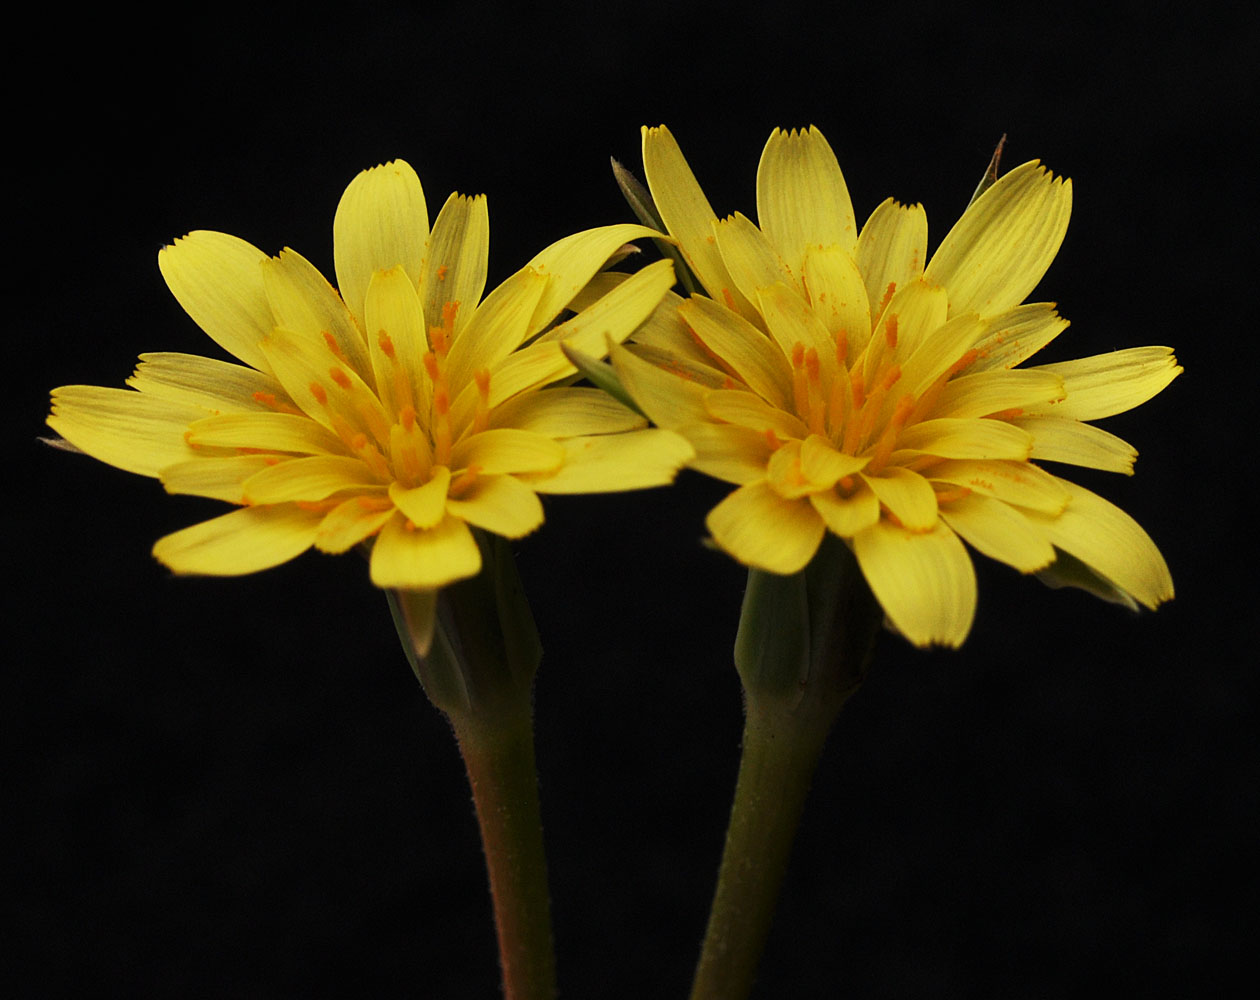 Flora of Eastern Washington Image: Uropappus lindleyi